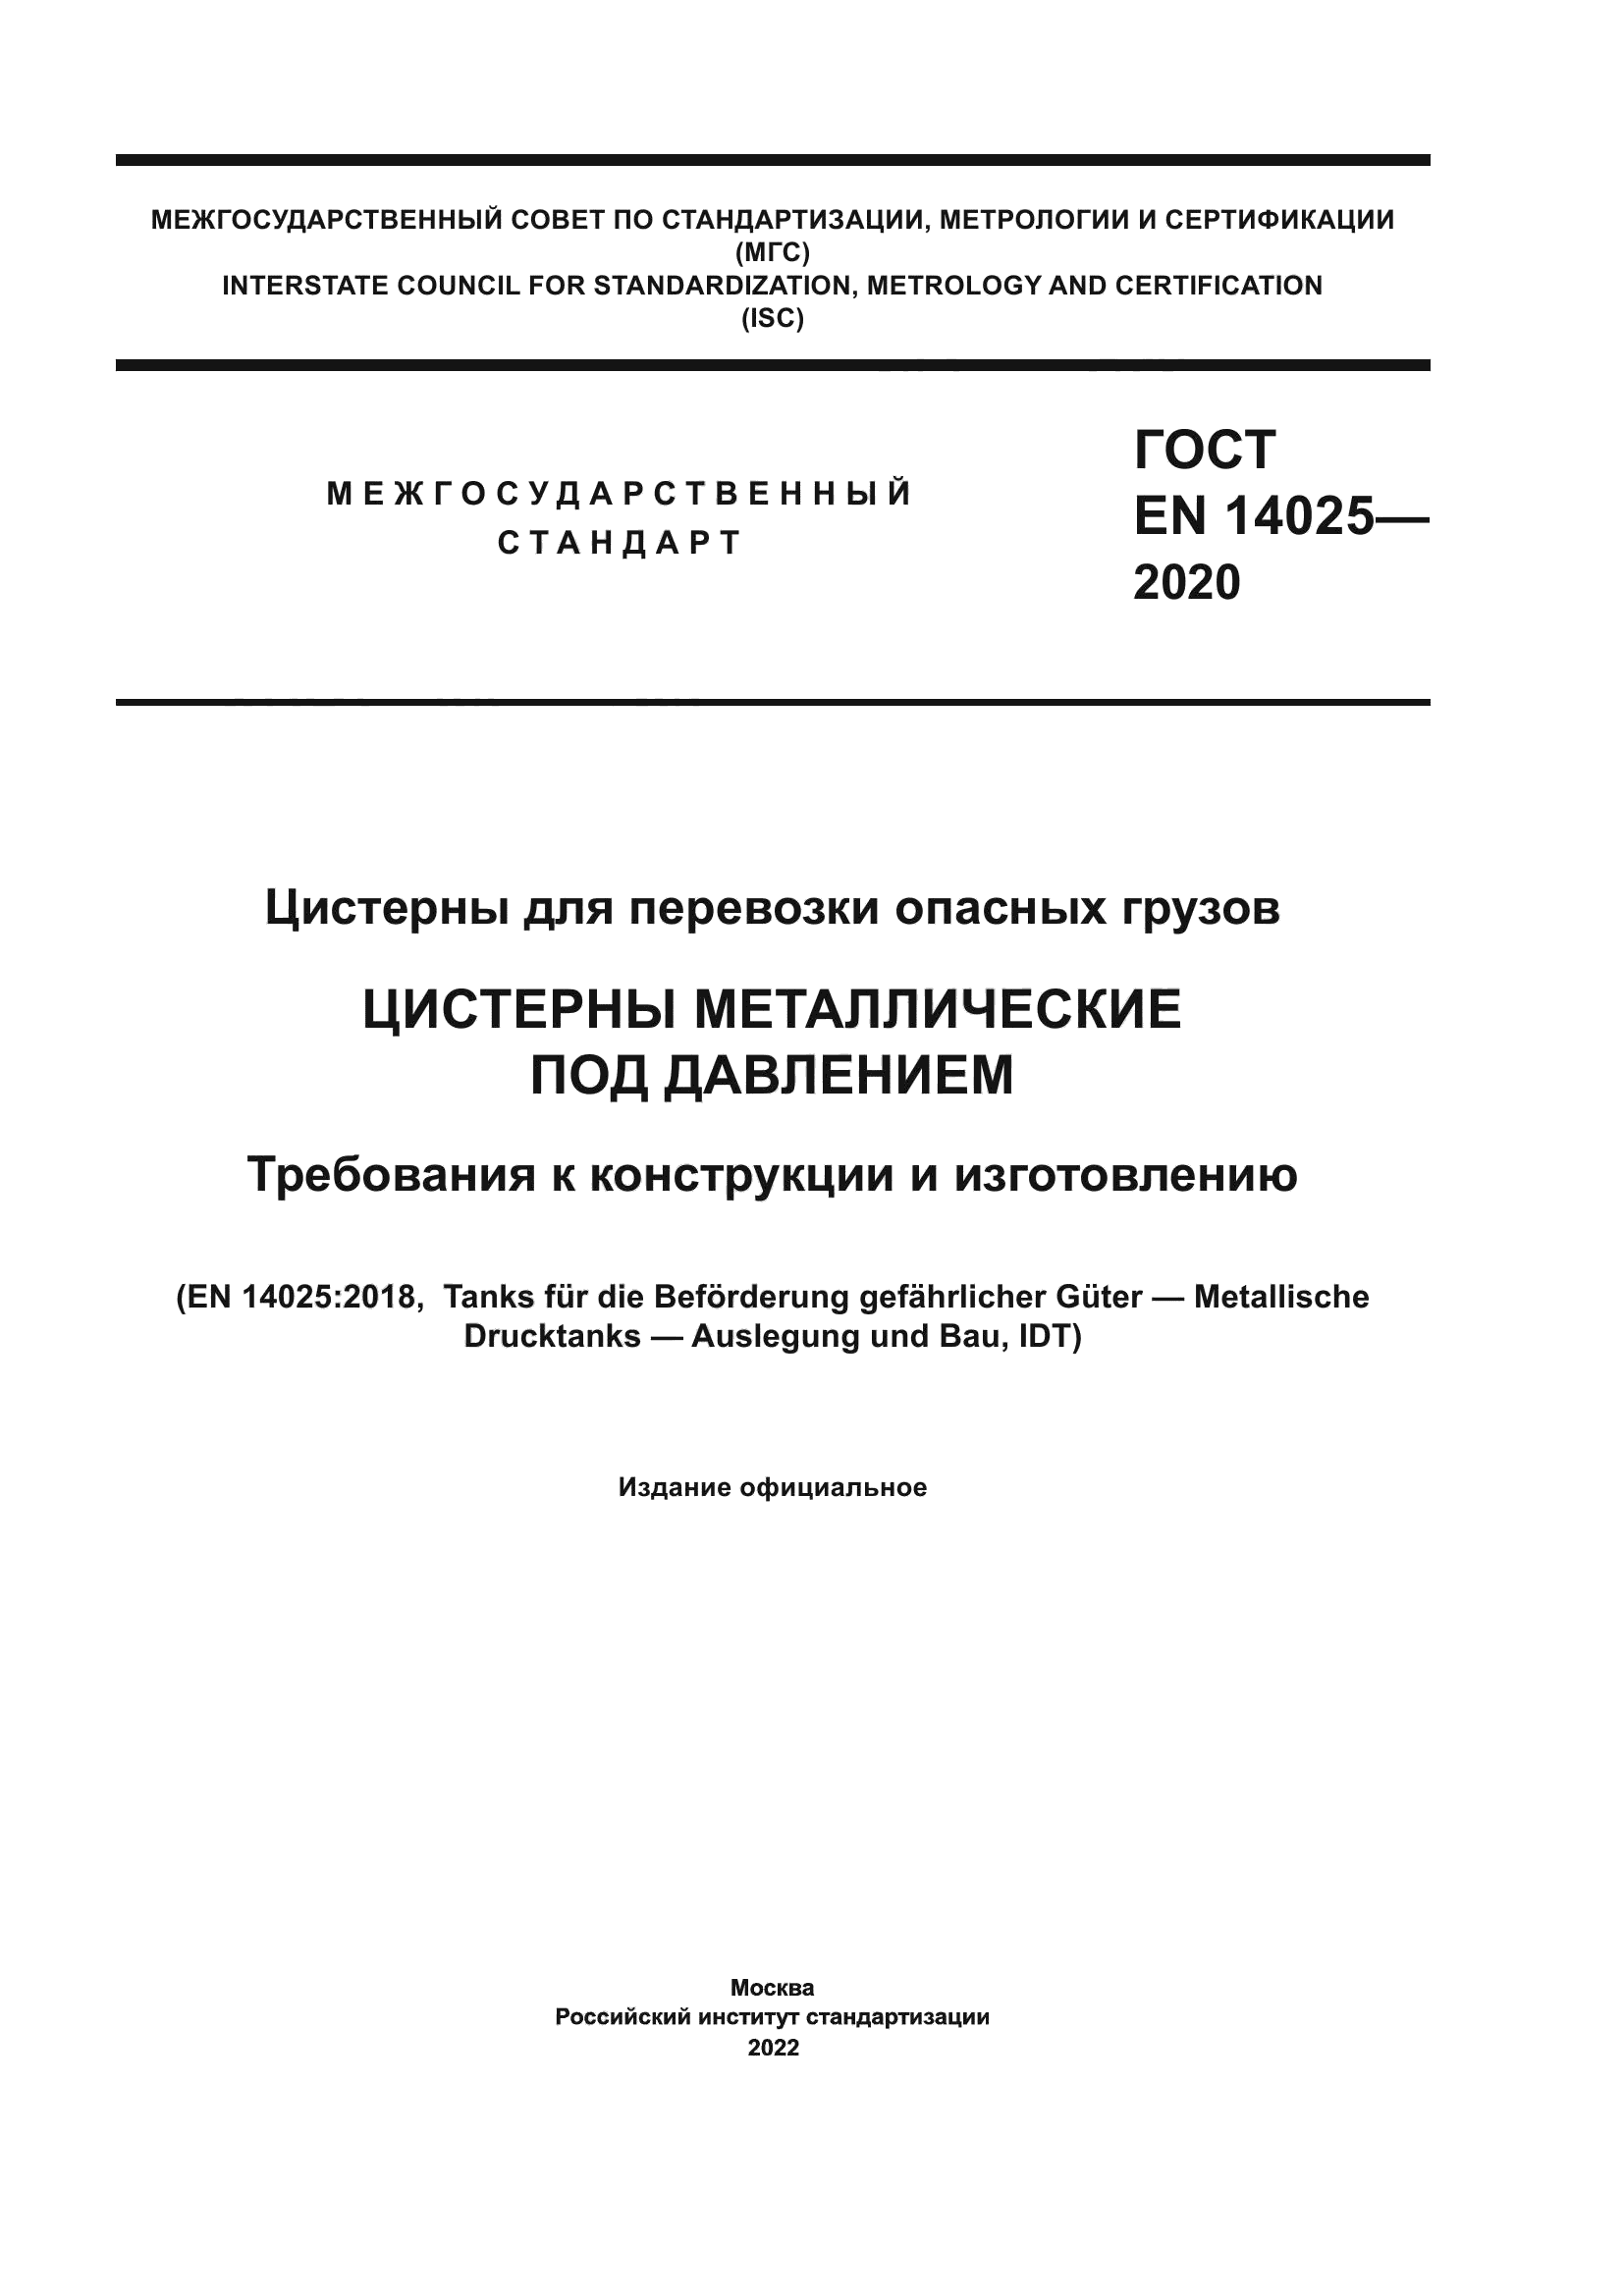 ГОСТ EN 14025-2020